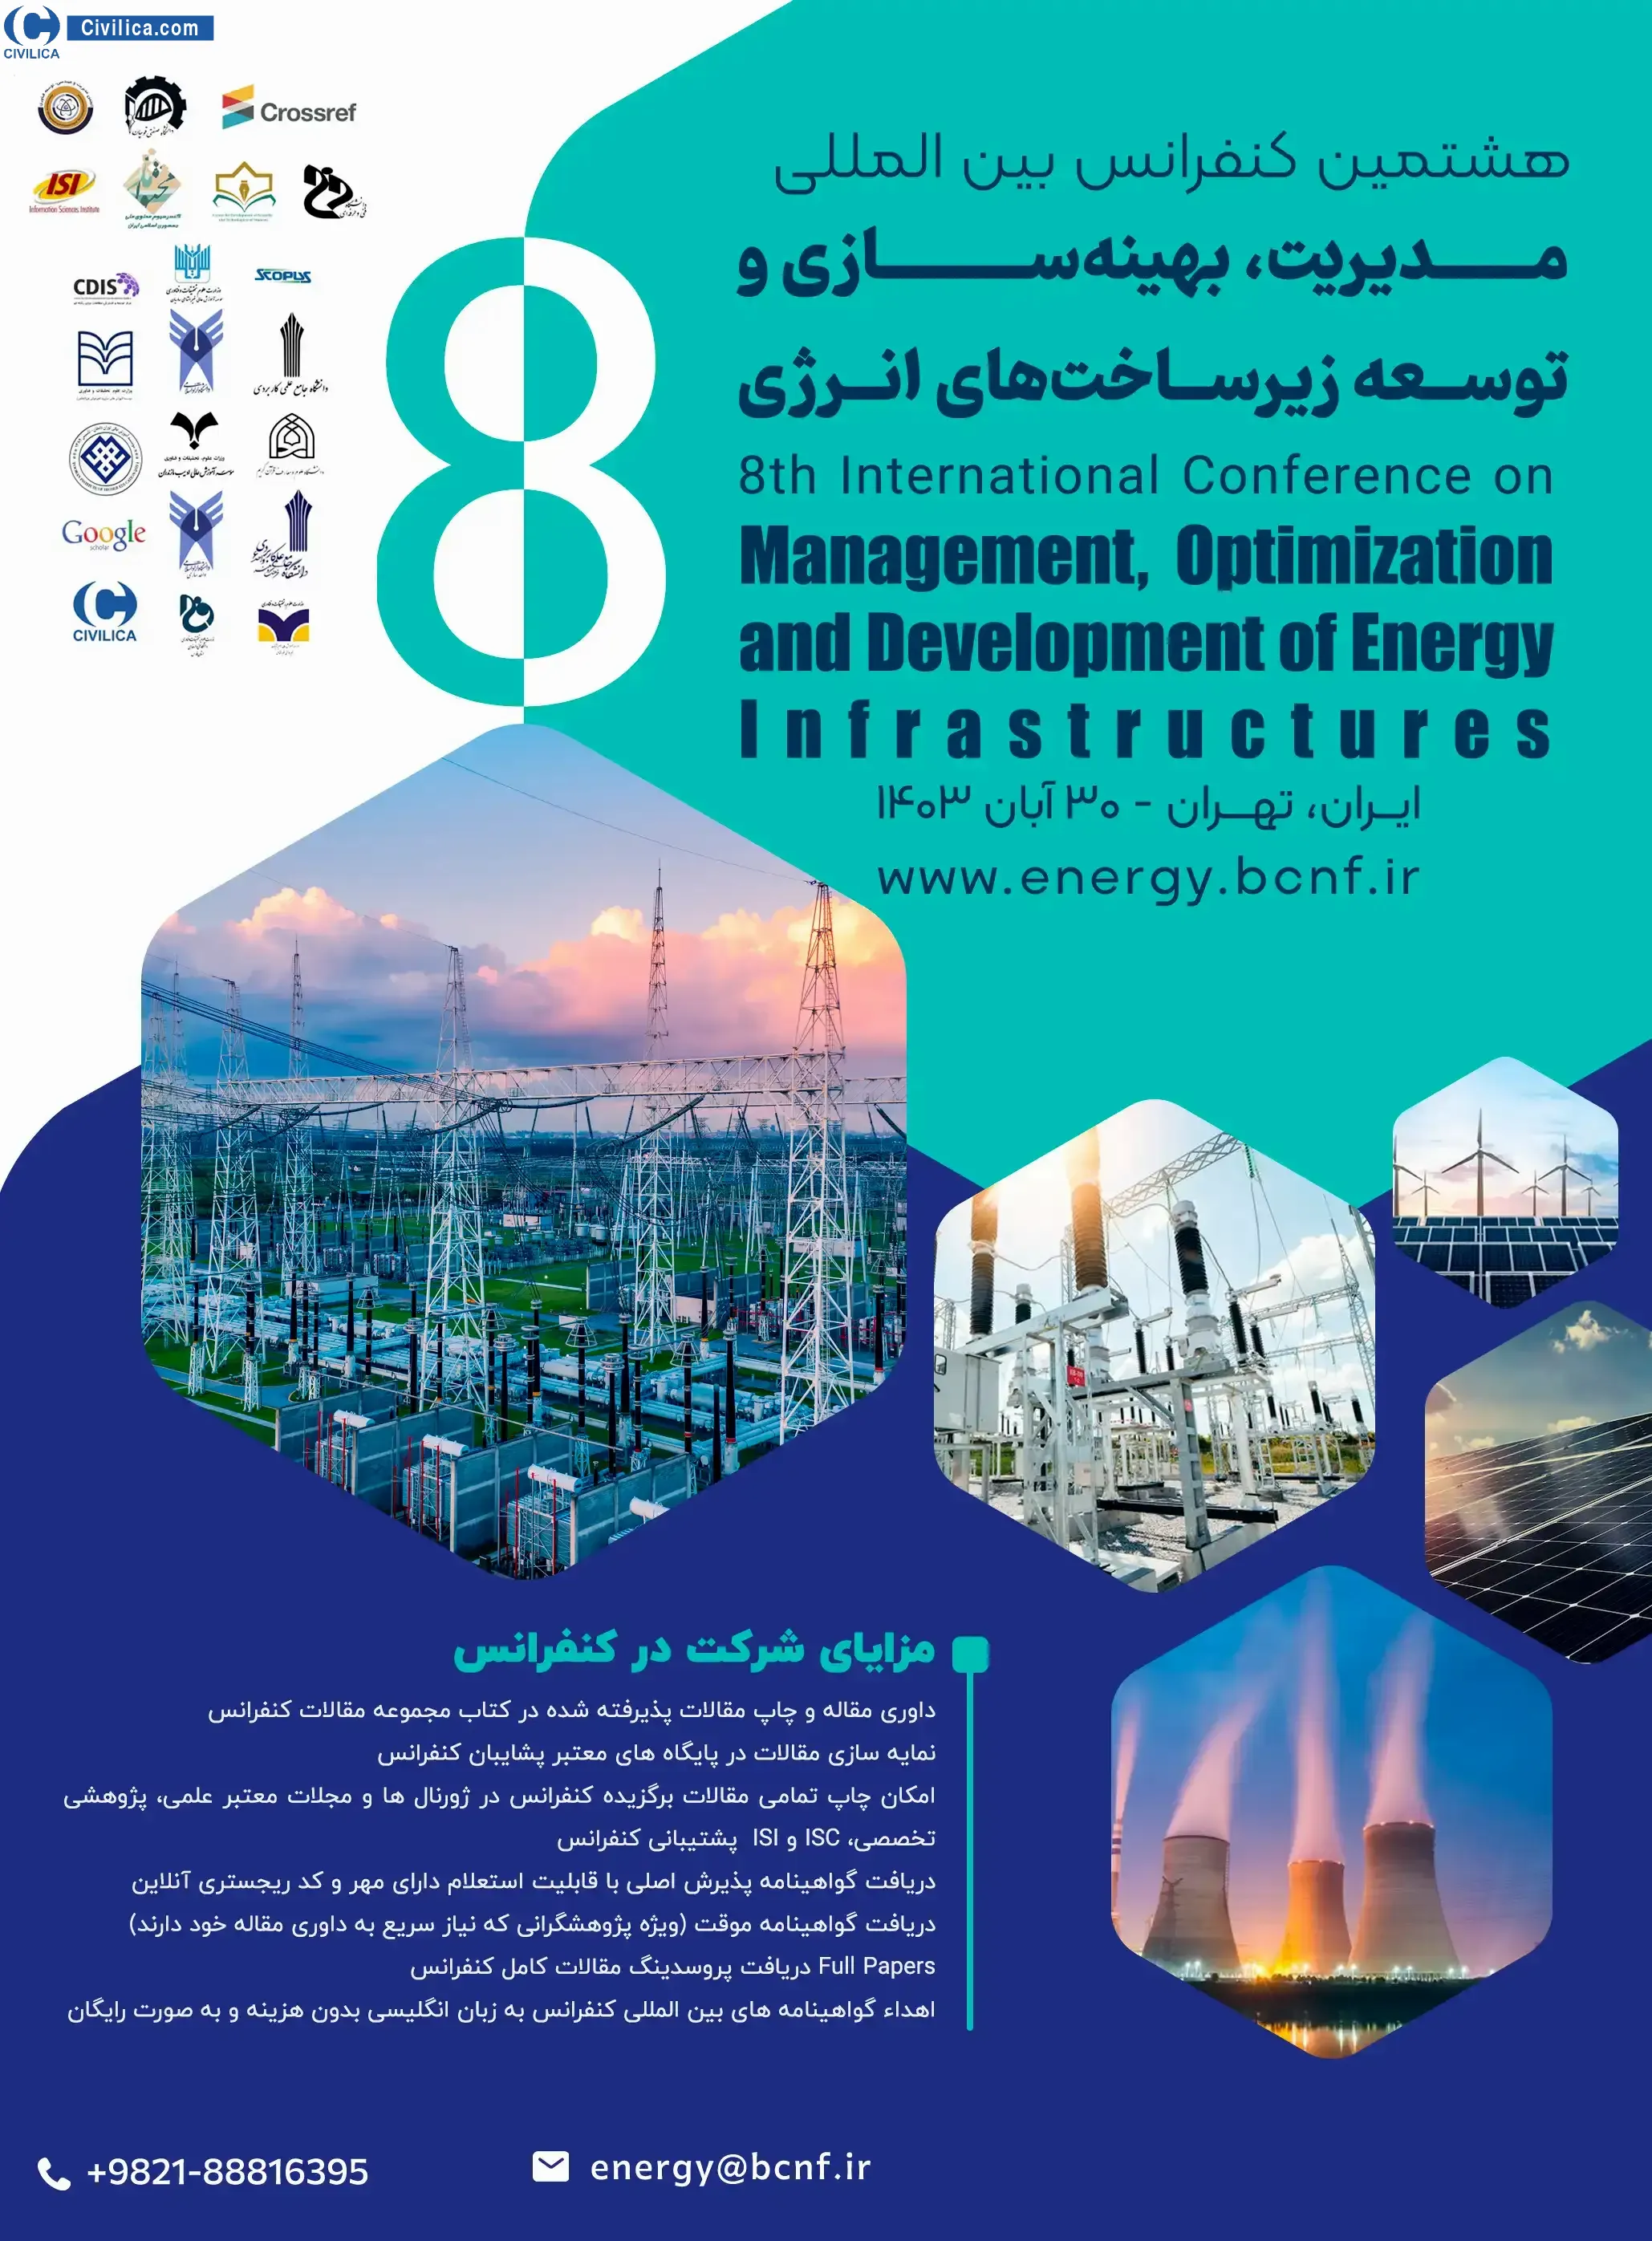 هشتمین کنفرانس بین المللی مدیریت، بهینه سازی و توسعه زیرساخت های انرژی